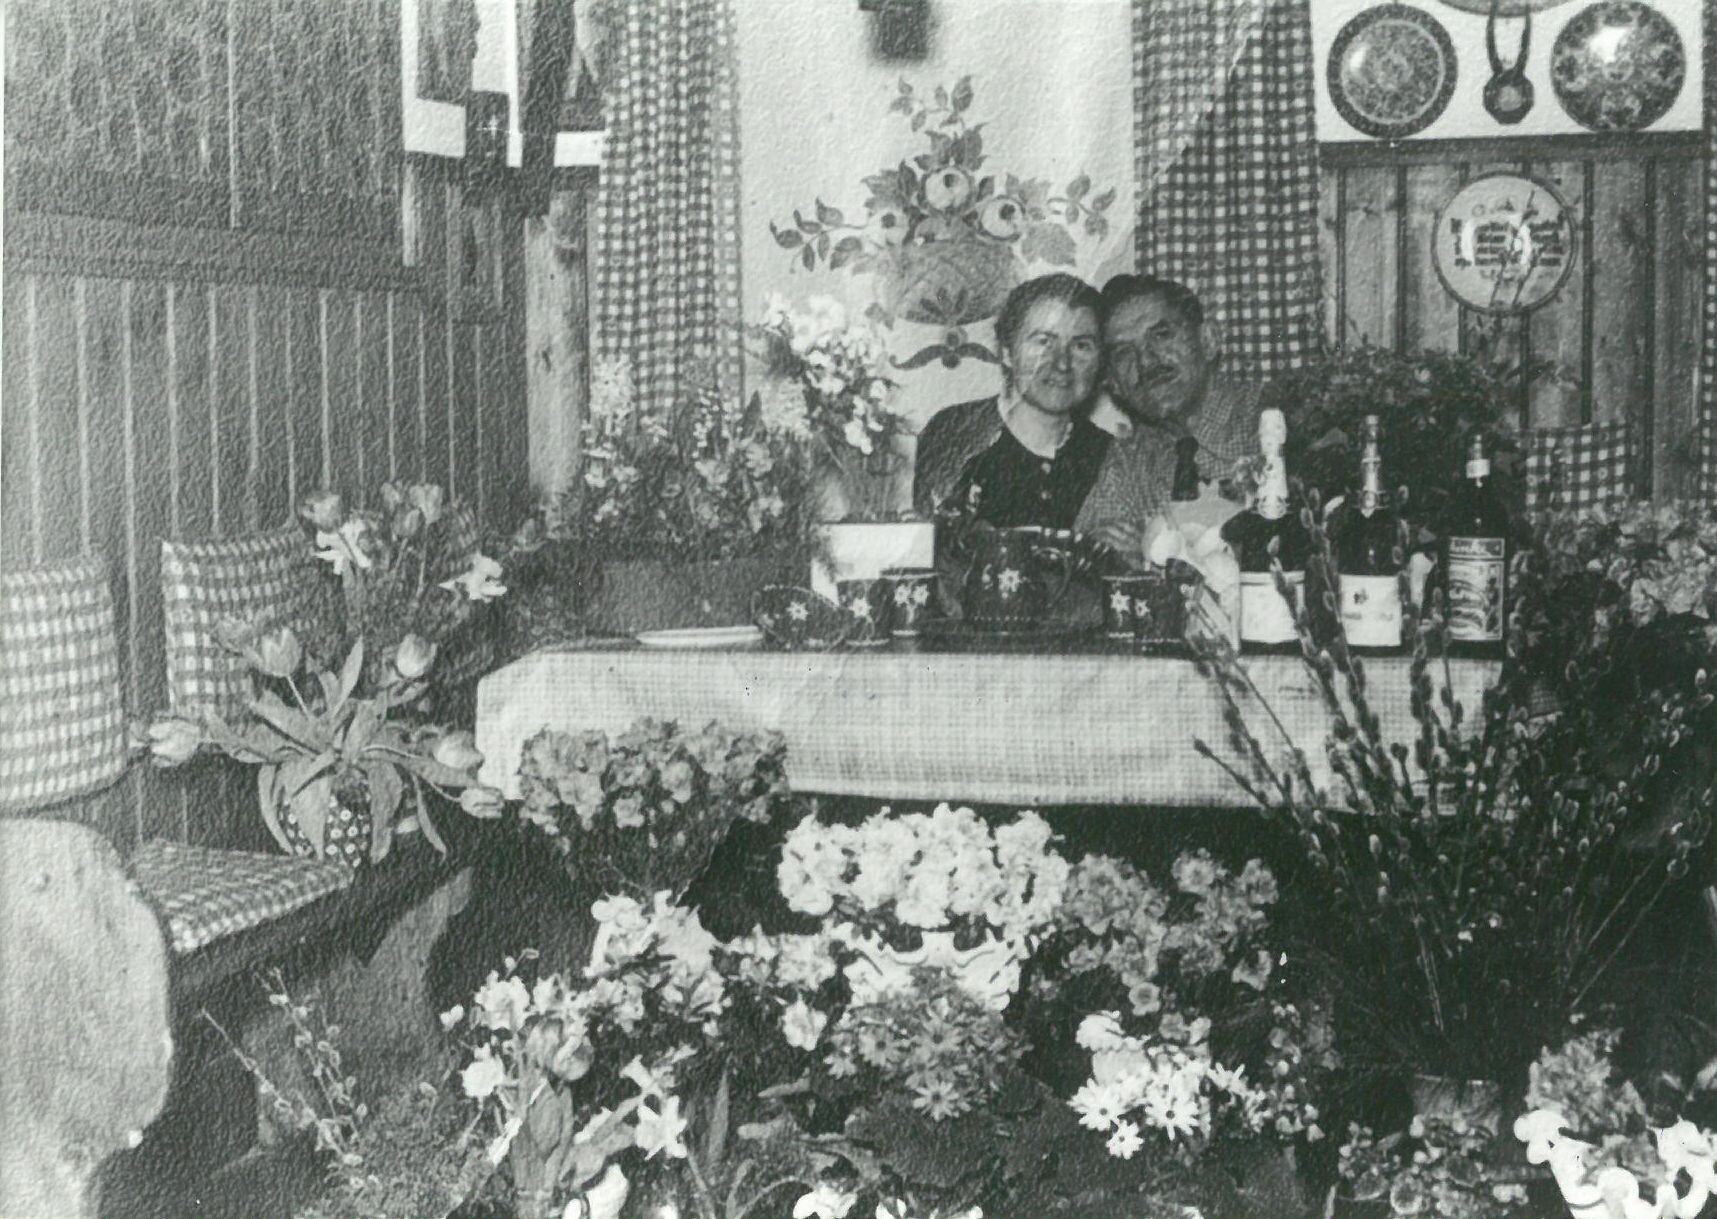 Patty Frank und Frau Marie Tobis am Tisch sitzend, von Blumensträußen umringt (Karl-May-Museum gGmbH RR-R)